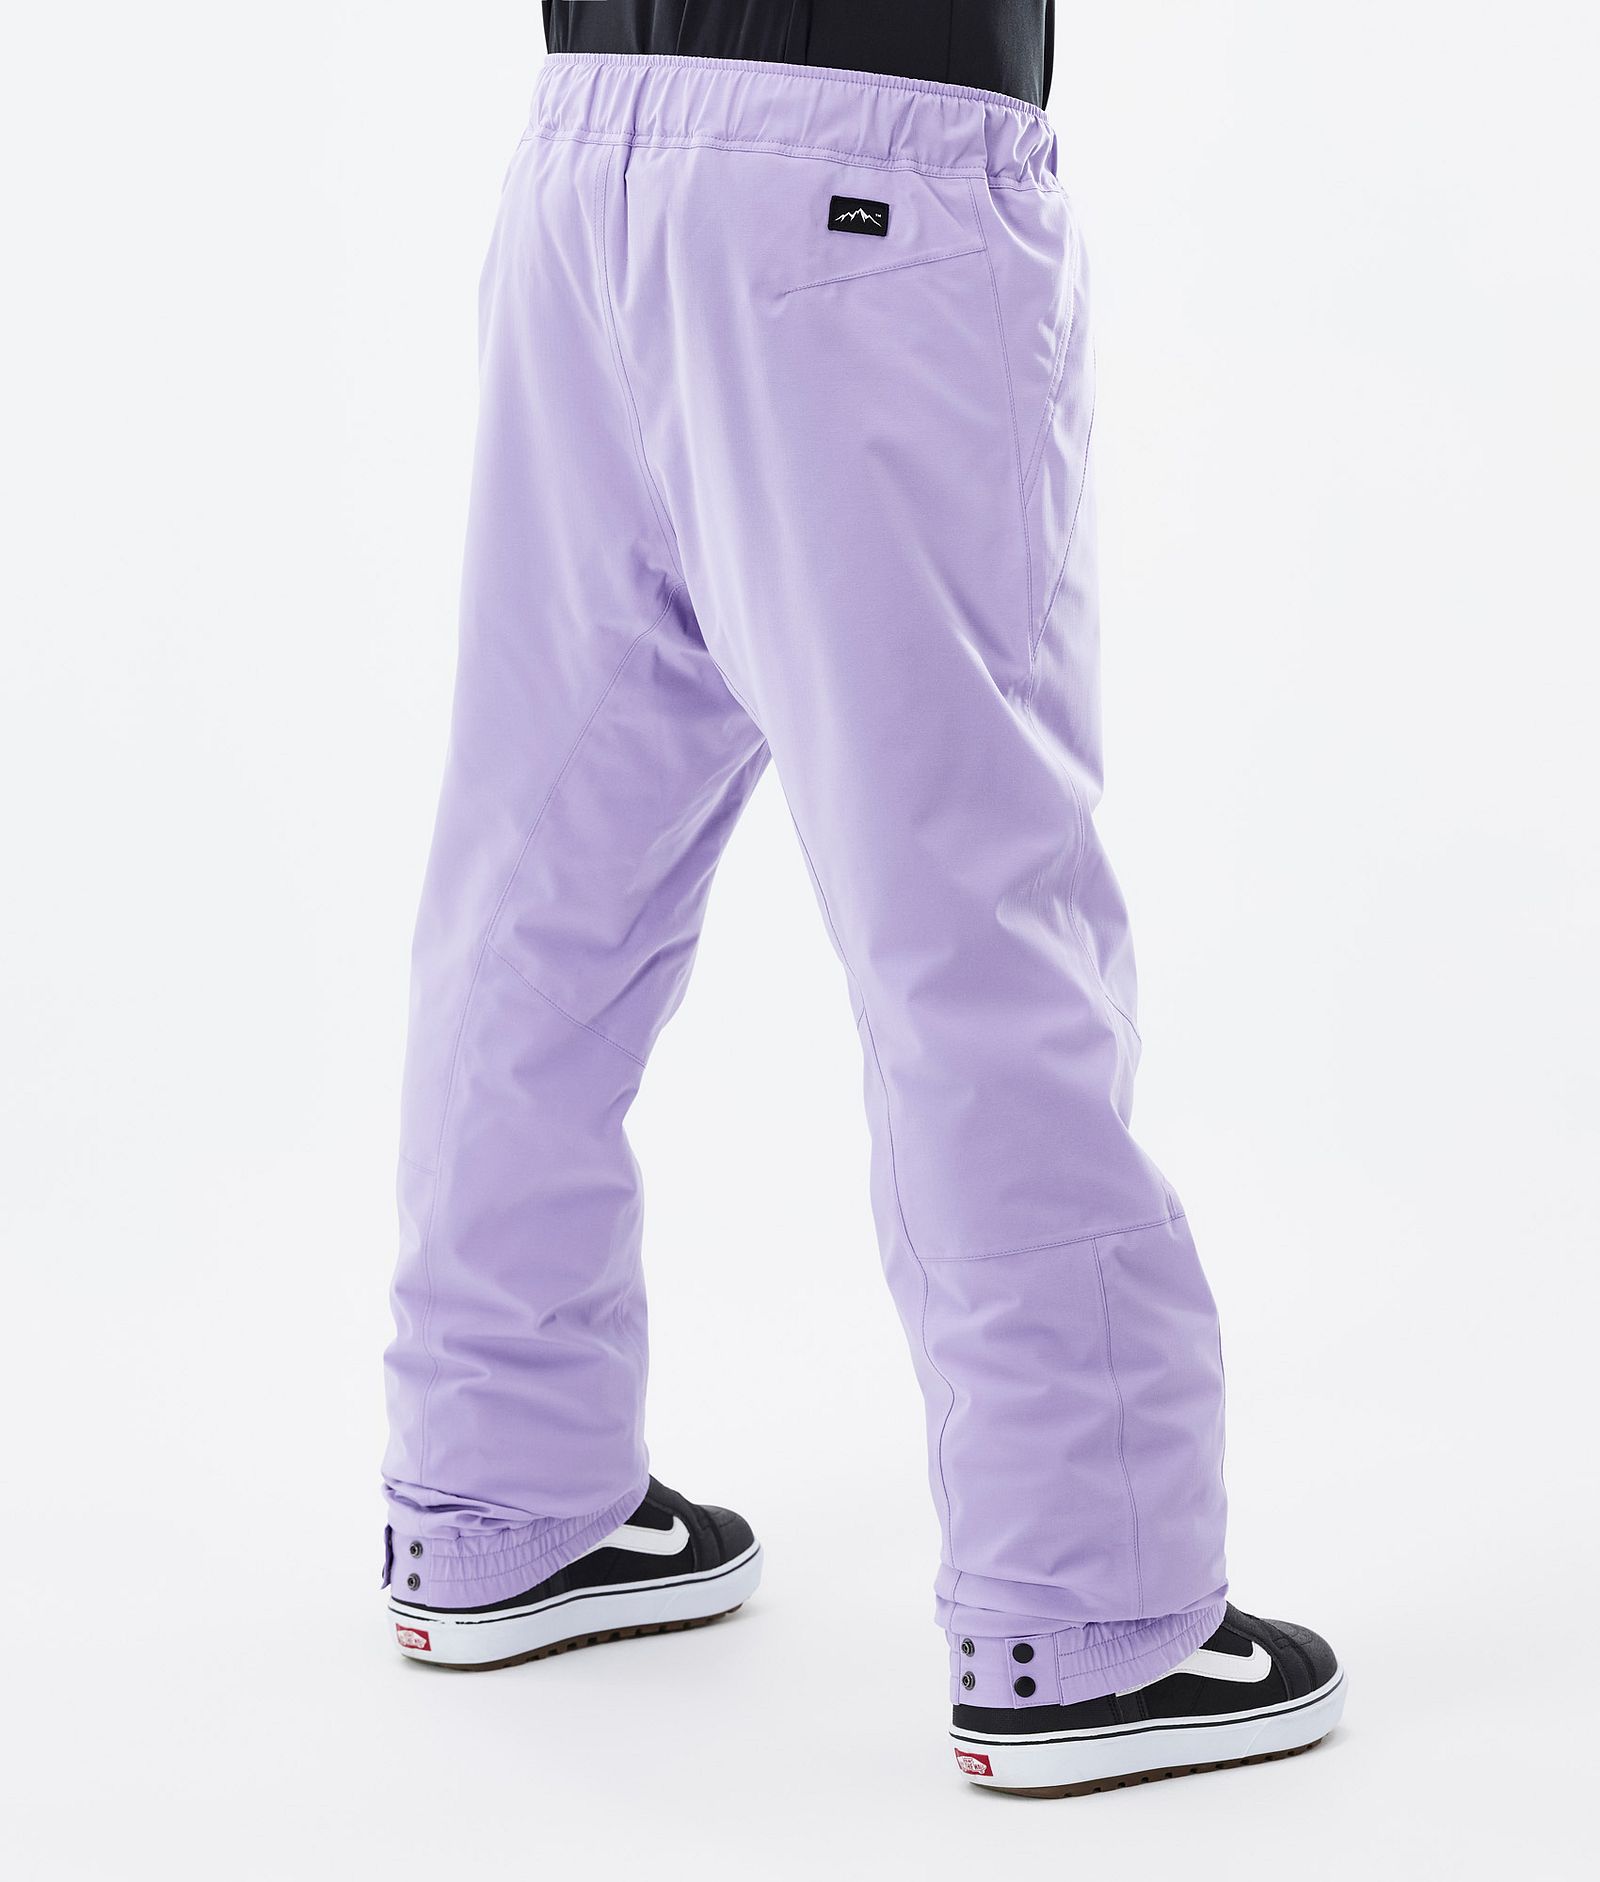 Blizzard 2022 Pantalon de Snowboard Homme Faded Violet